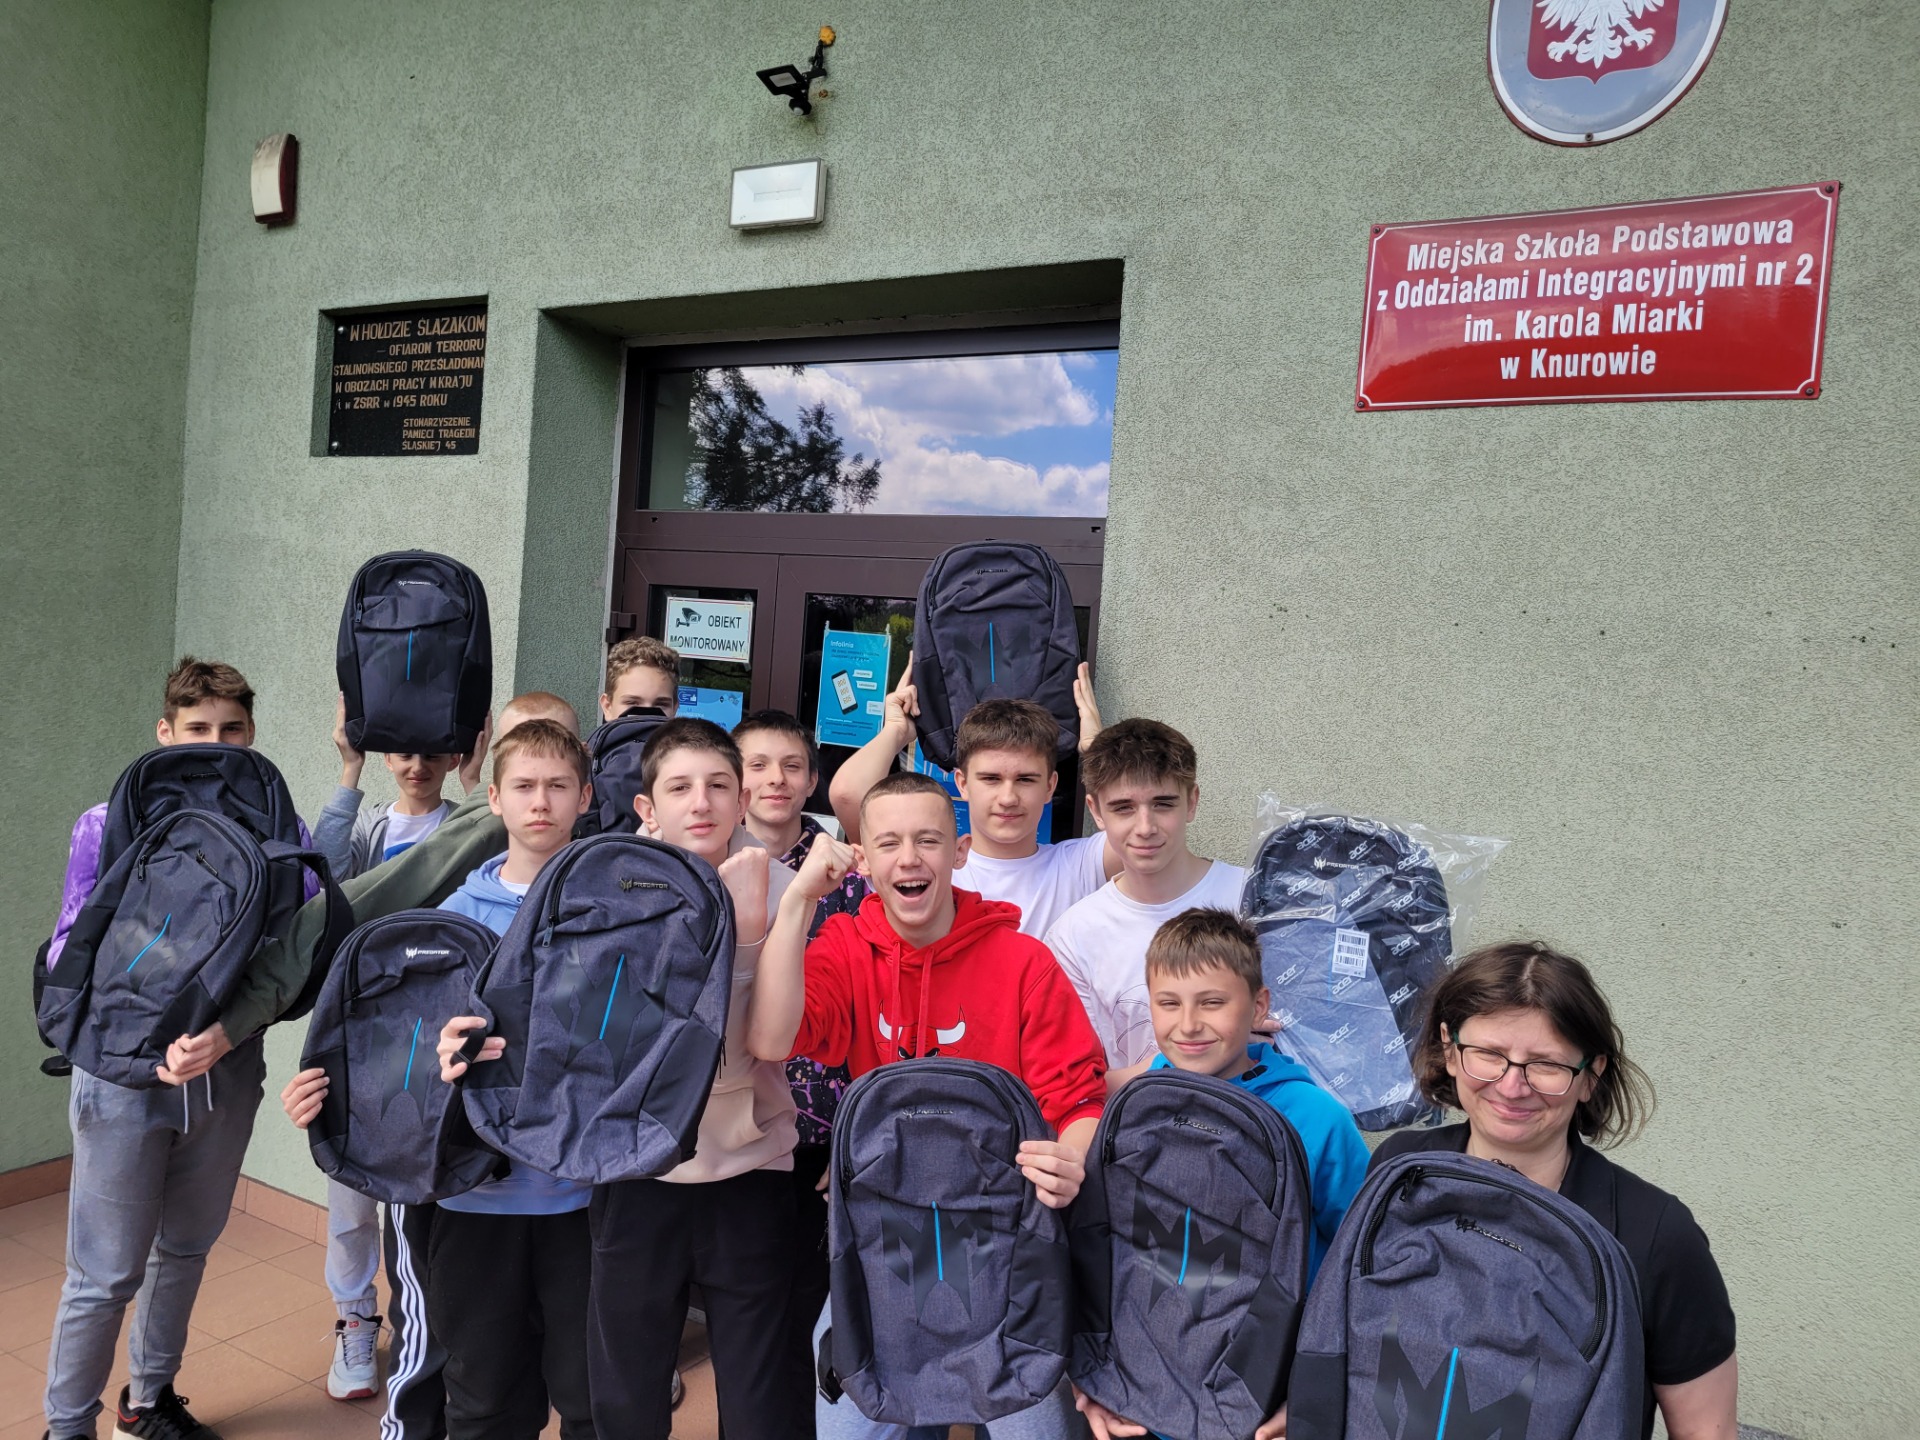 Grupa 10 uczniów wraz z nauczycielką trzymając plecaki uśmiechają się (krzyczą z radości) do zdjęcia przed budynkiem szkoły.